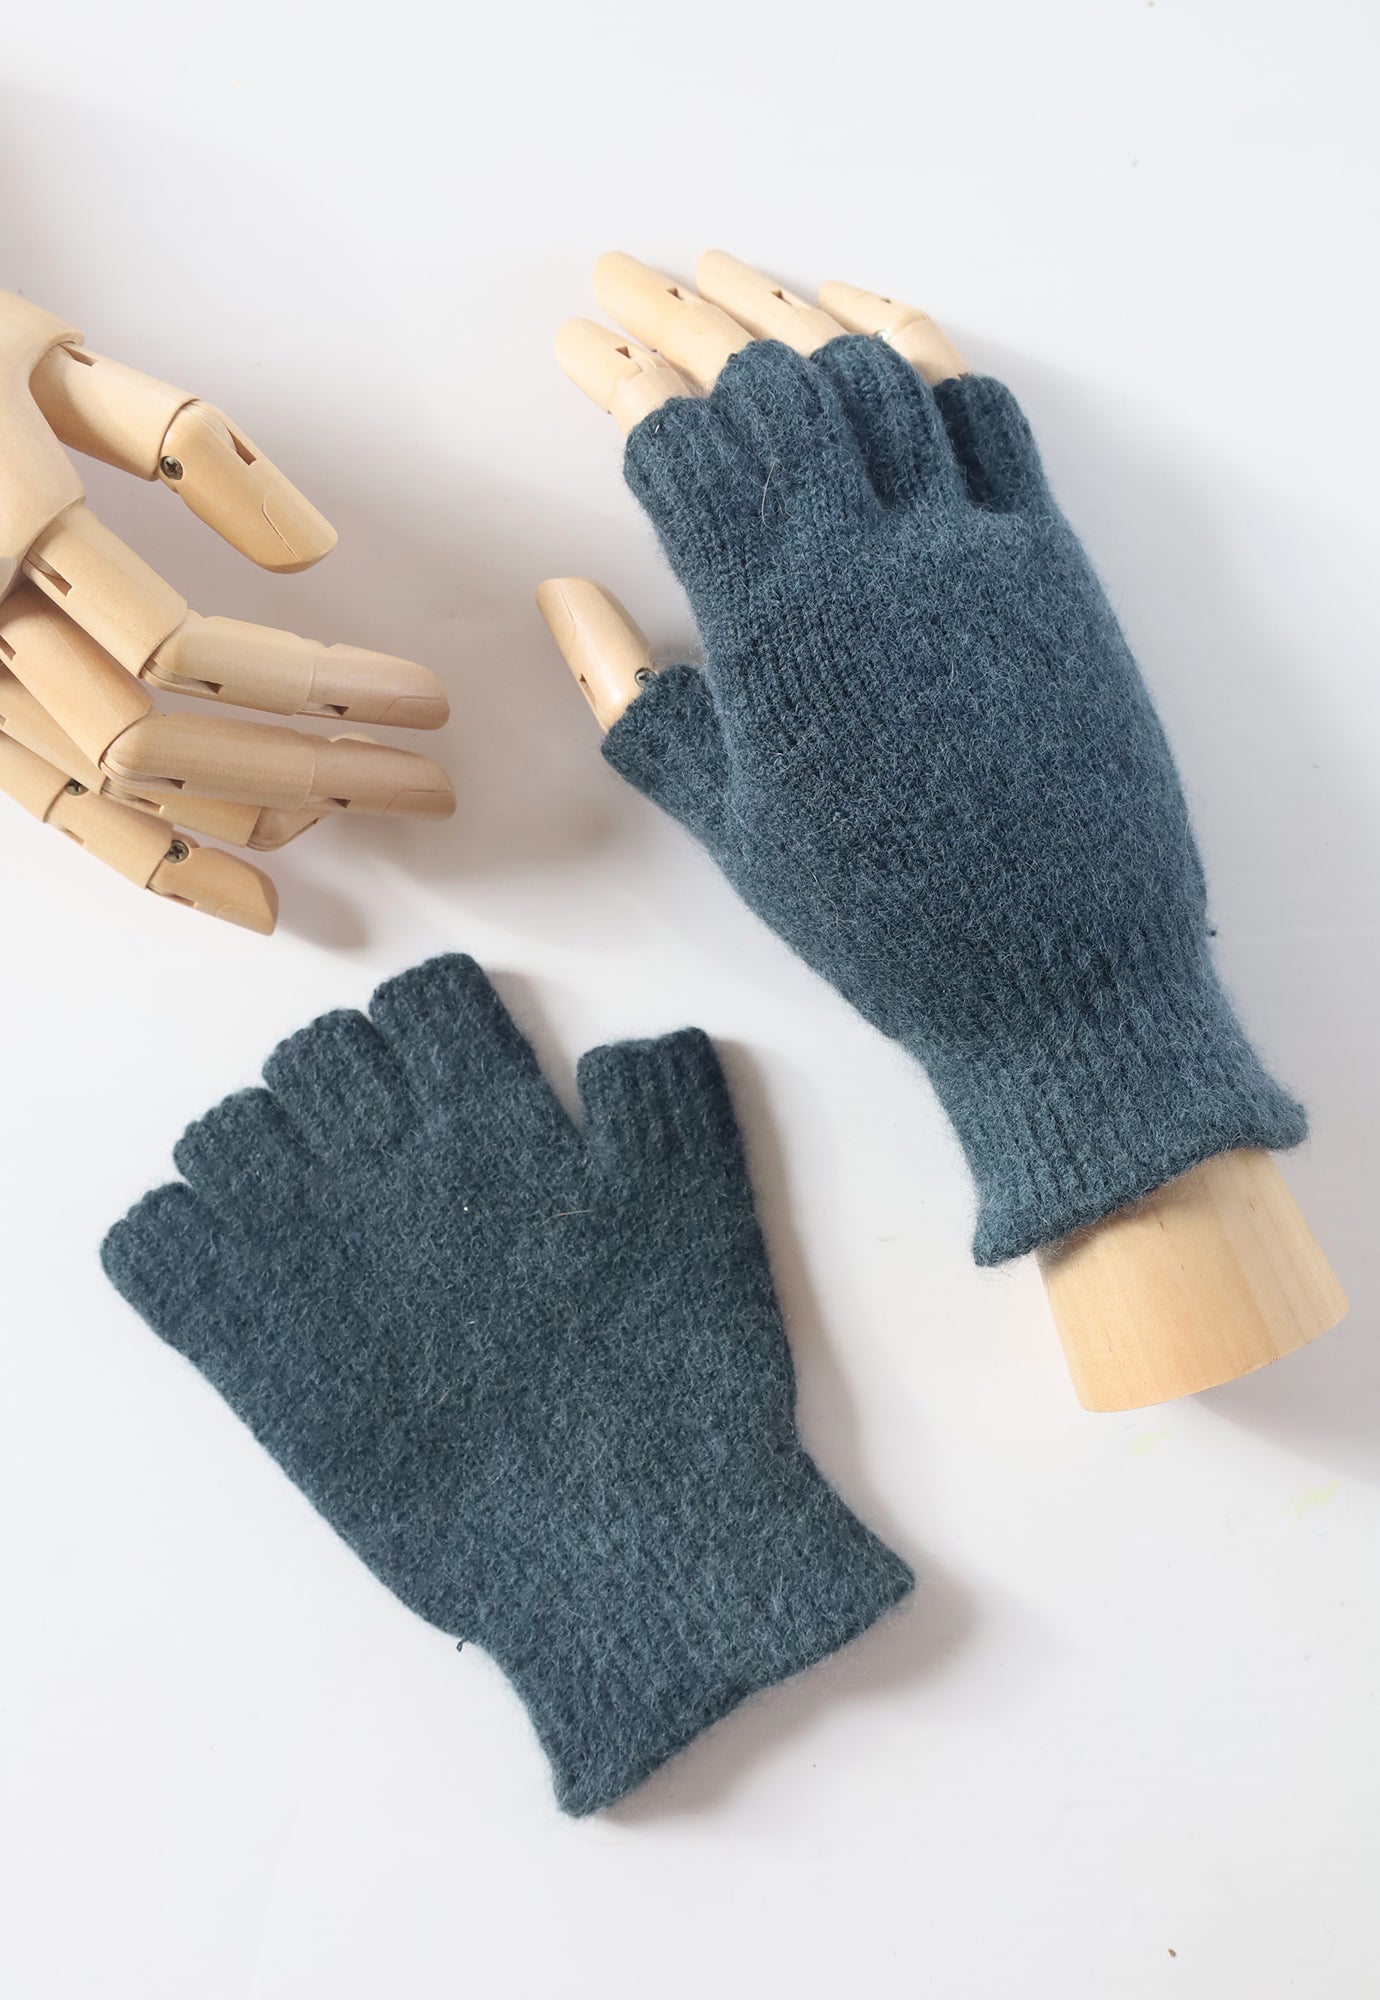 penelope durston - angora fingerless gloves - short